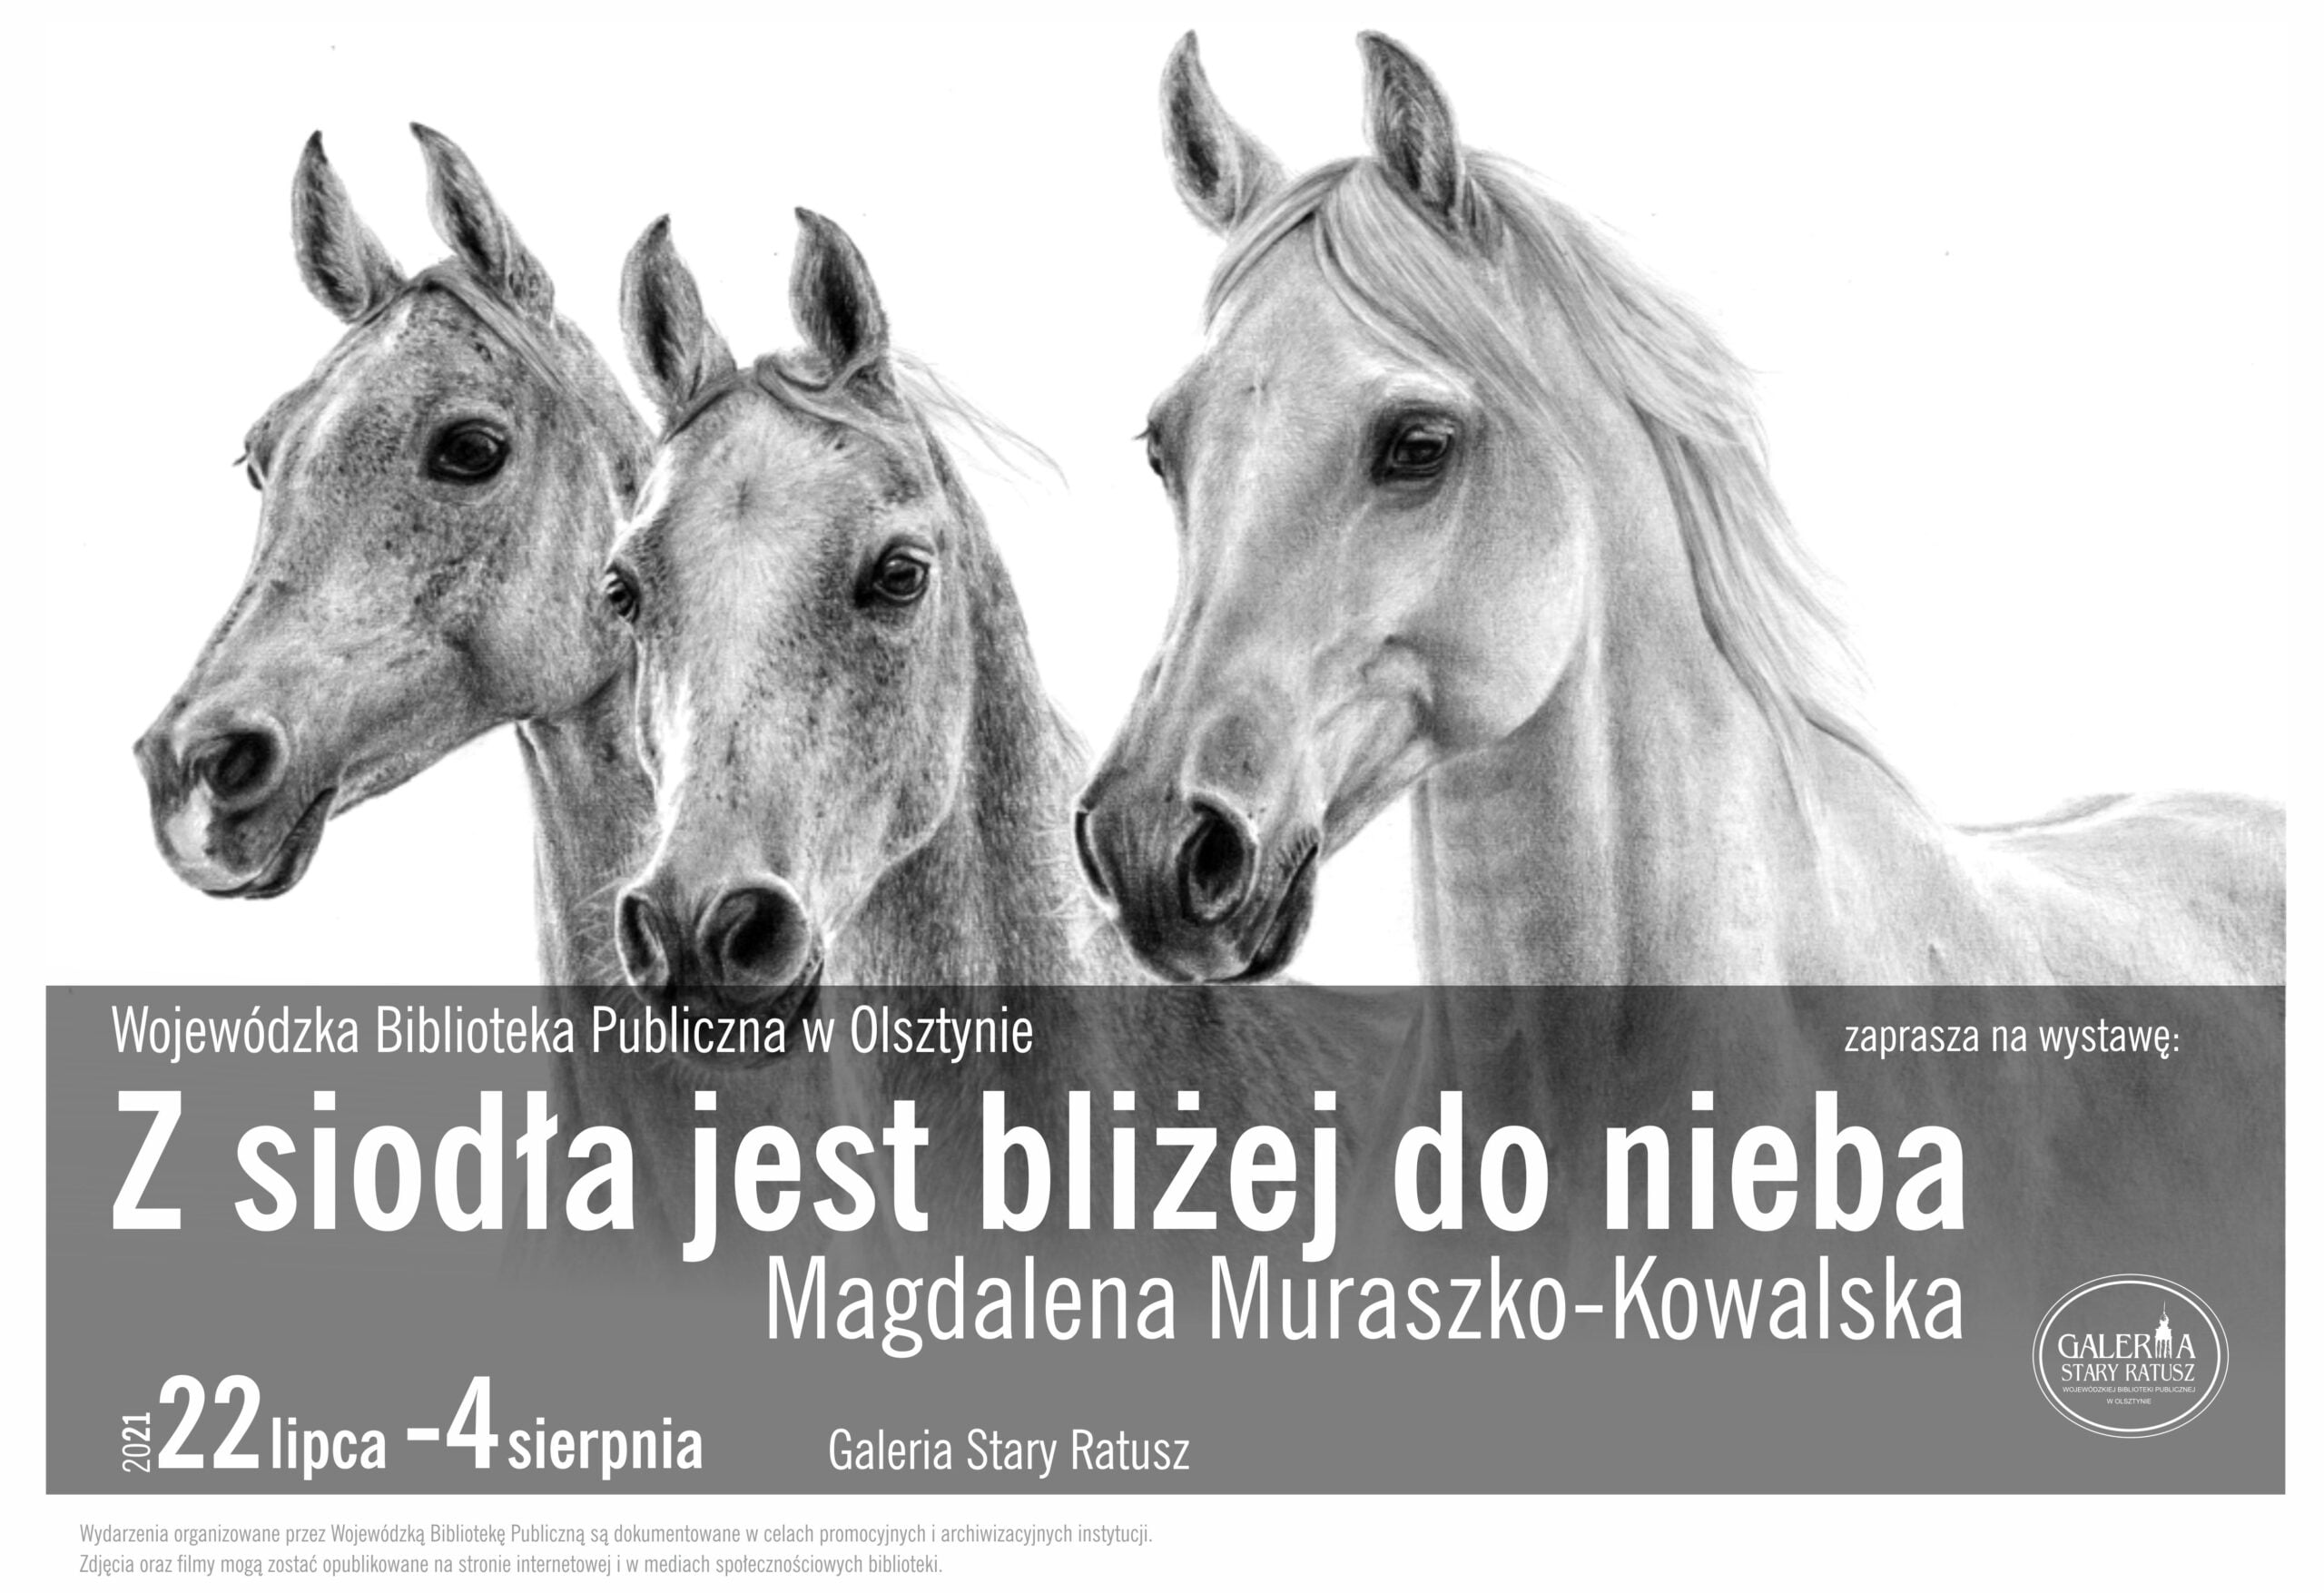 Featured image for “Z siodła jest bliżej do nieba.”